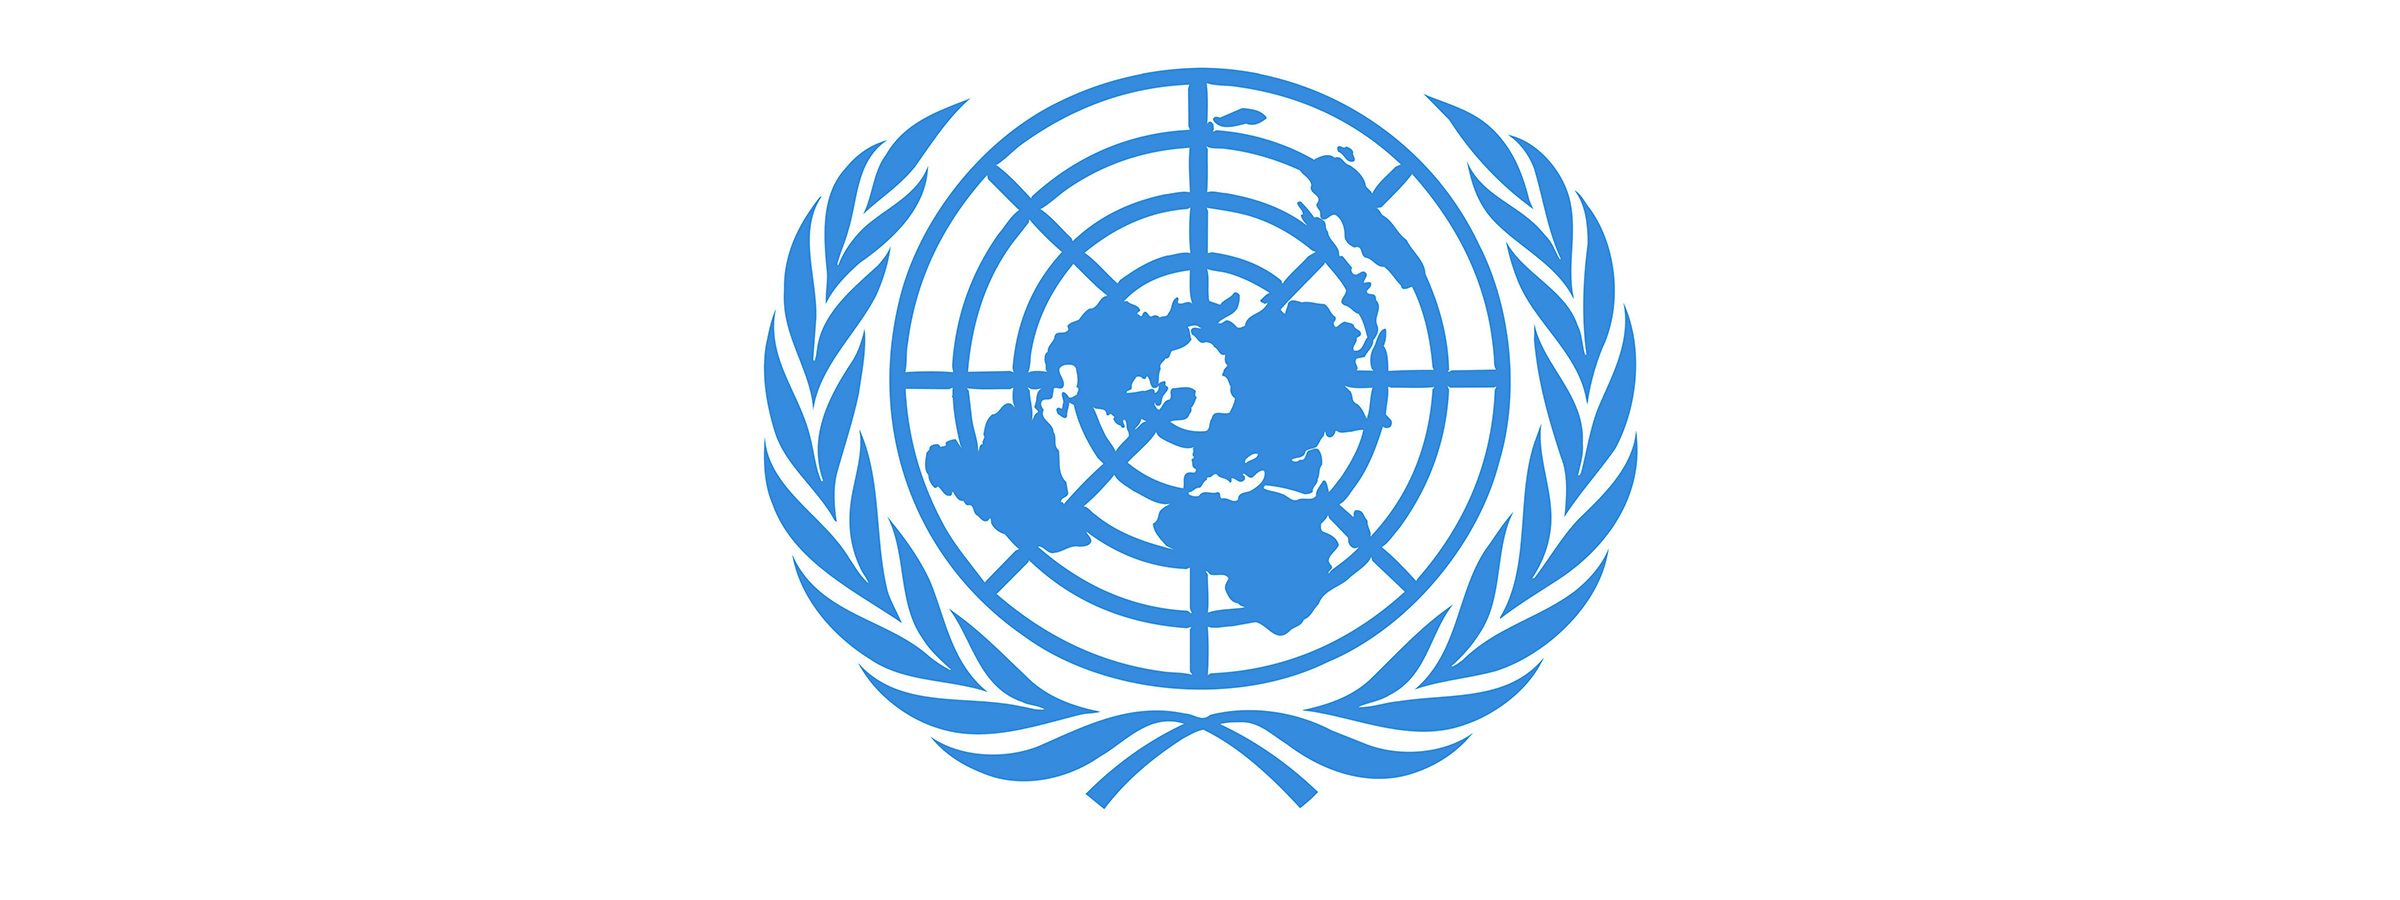 Европейская комиссия оон. Европейская экономическая комиссия ООН (ЕЭК). Логотип ООН. Флаг организации Объединенных наций. Организация Объединённых наций ООН эмблема.